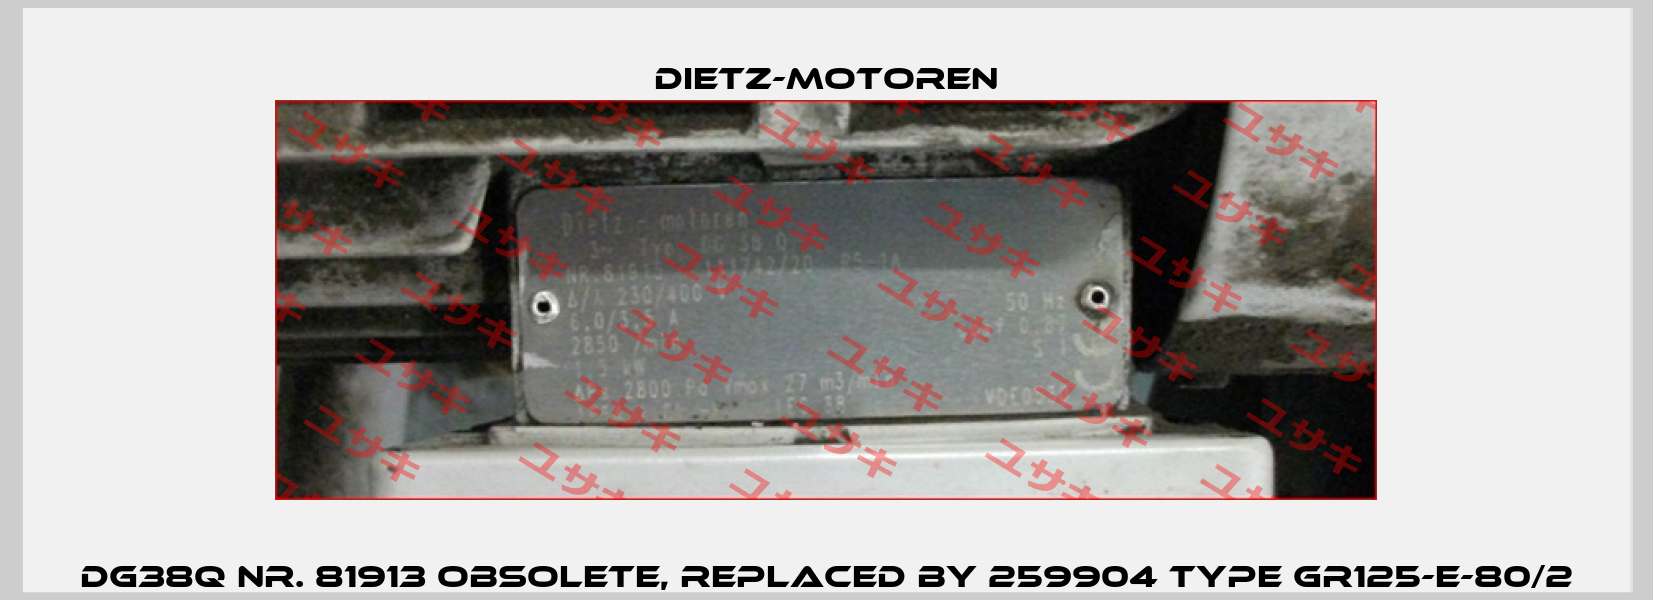 DG38Q nr. 81913 obsolete, replaced by 259904 Type GR125-E-80/2 Dietz-Motoren